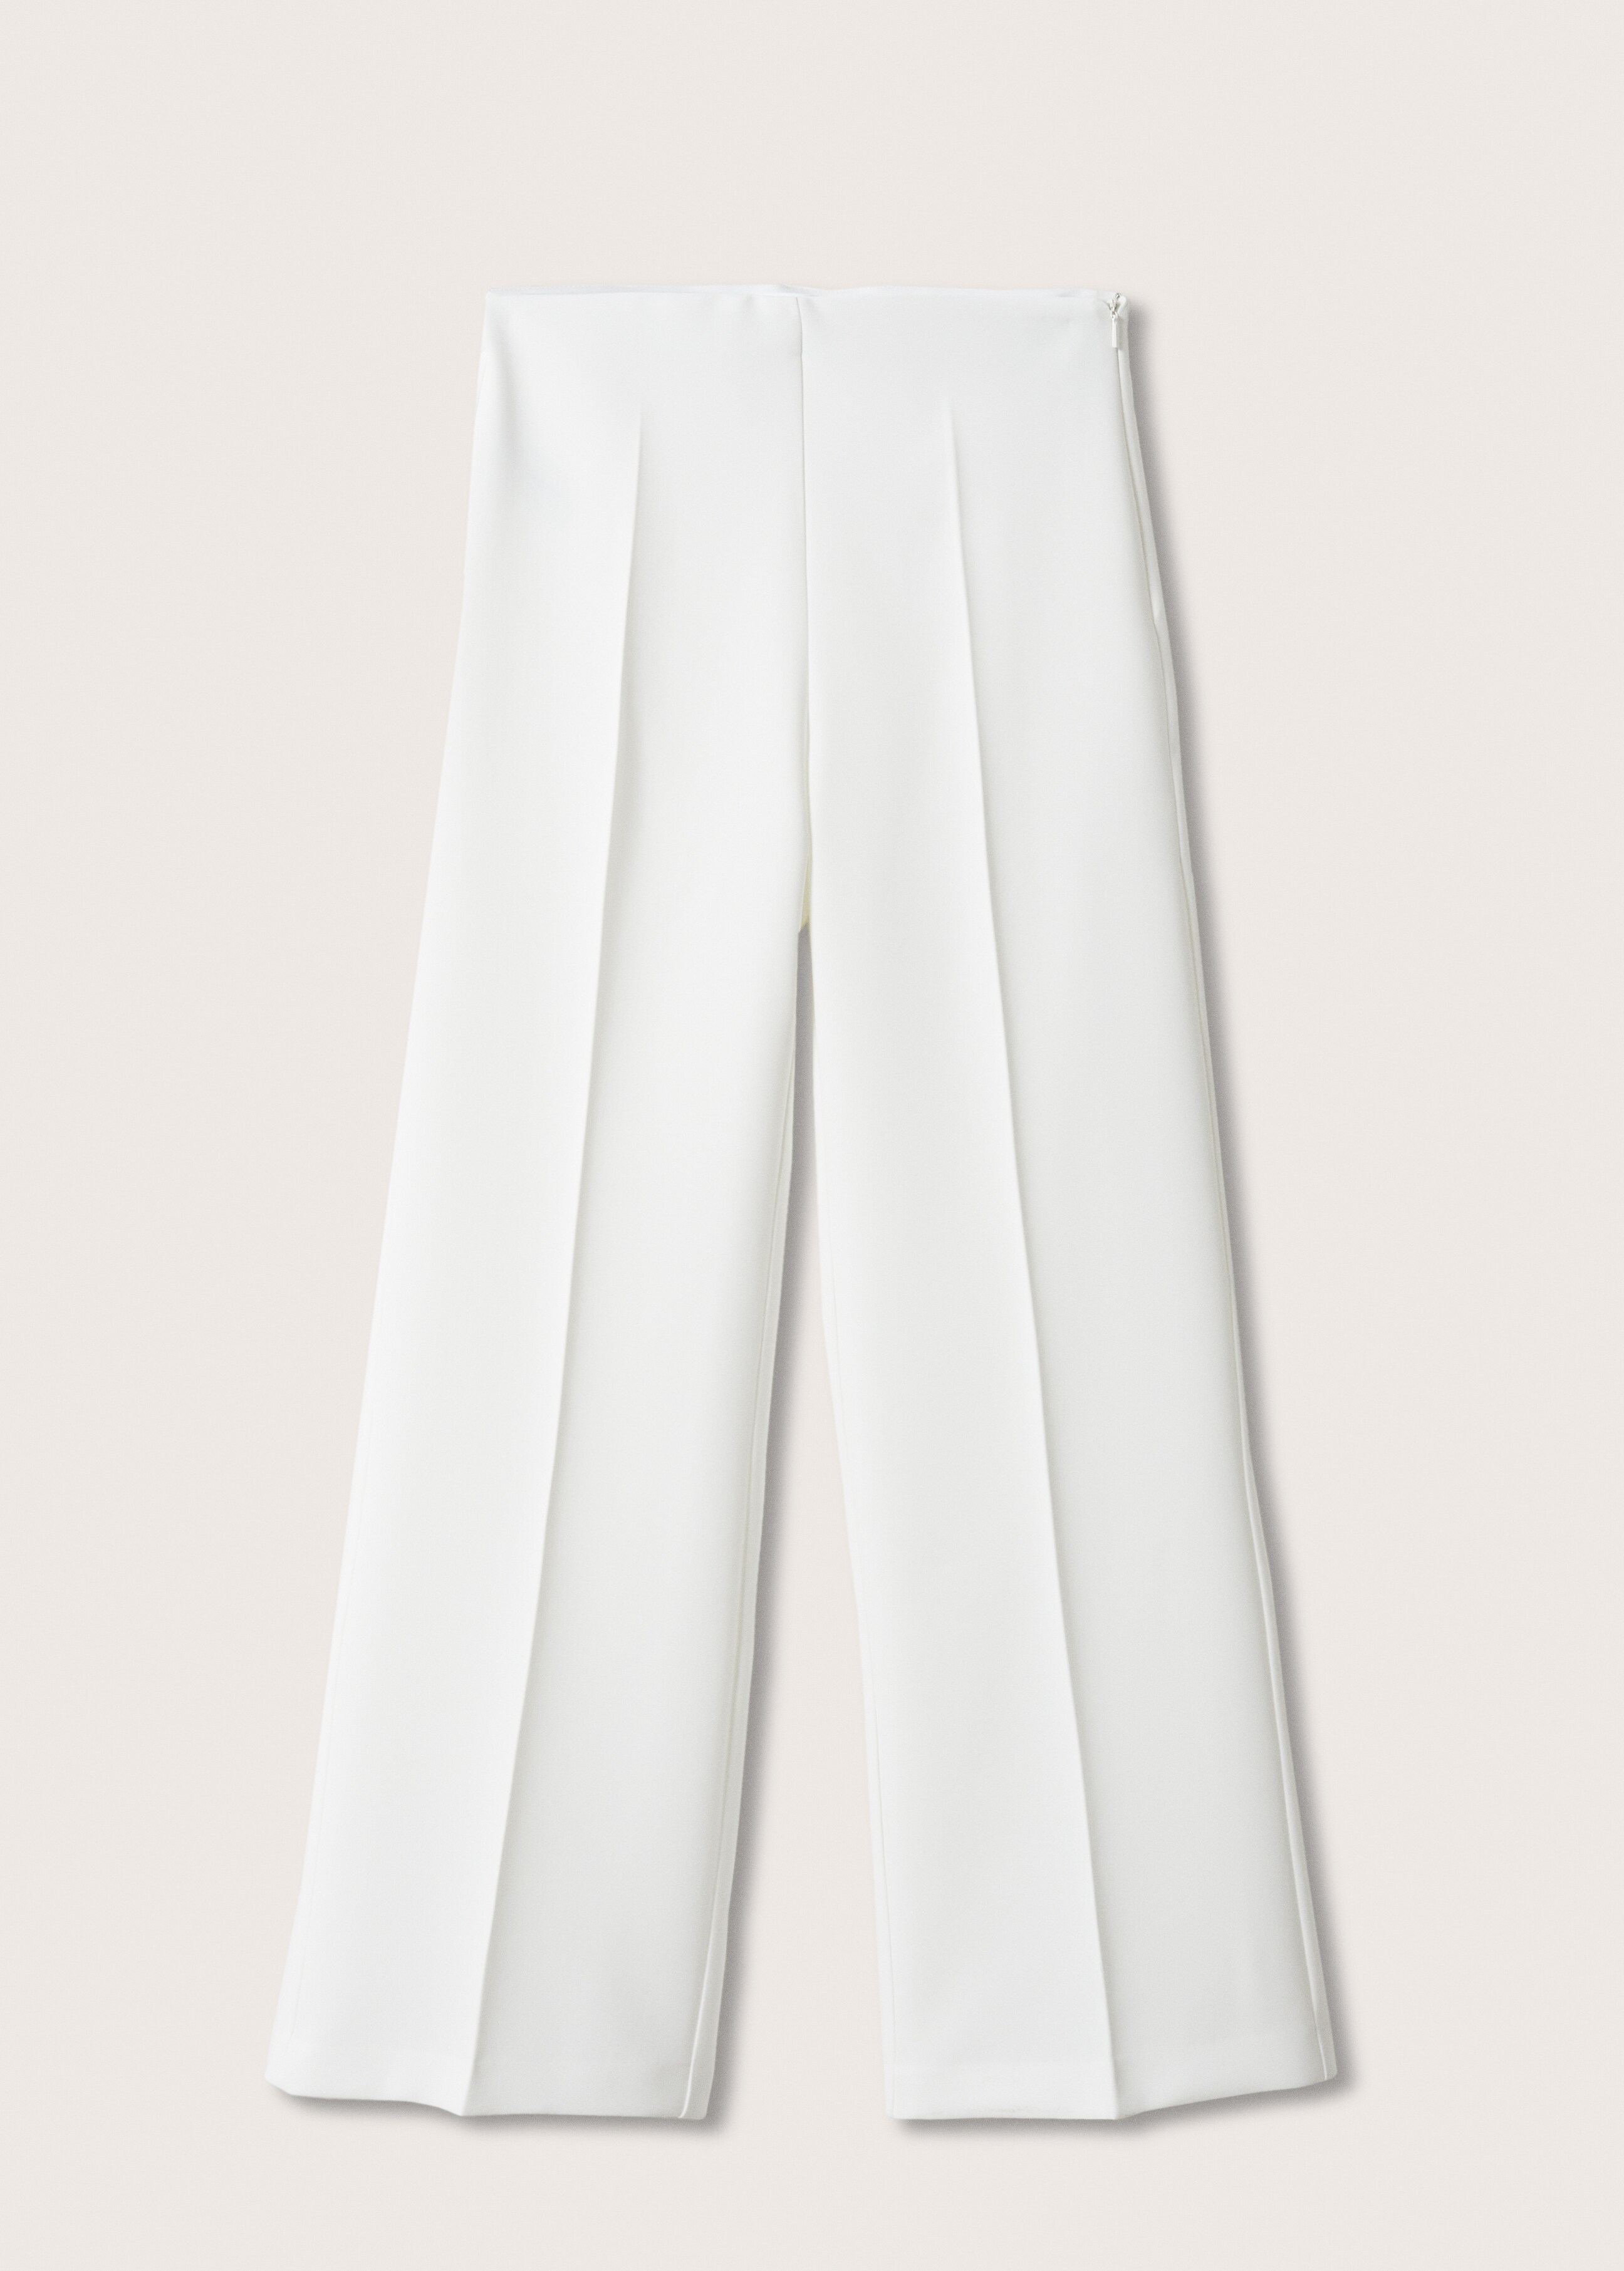 Pantalón traje wideleg  - Artículo sin modelo